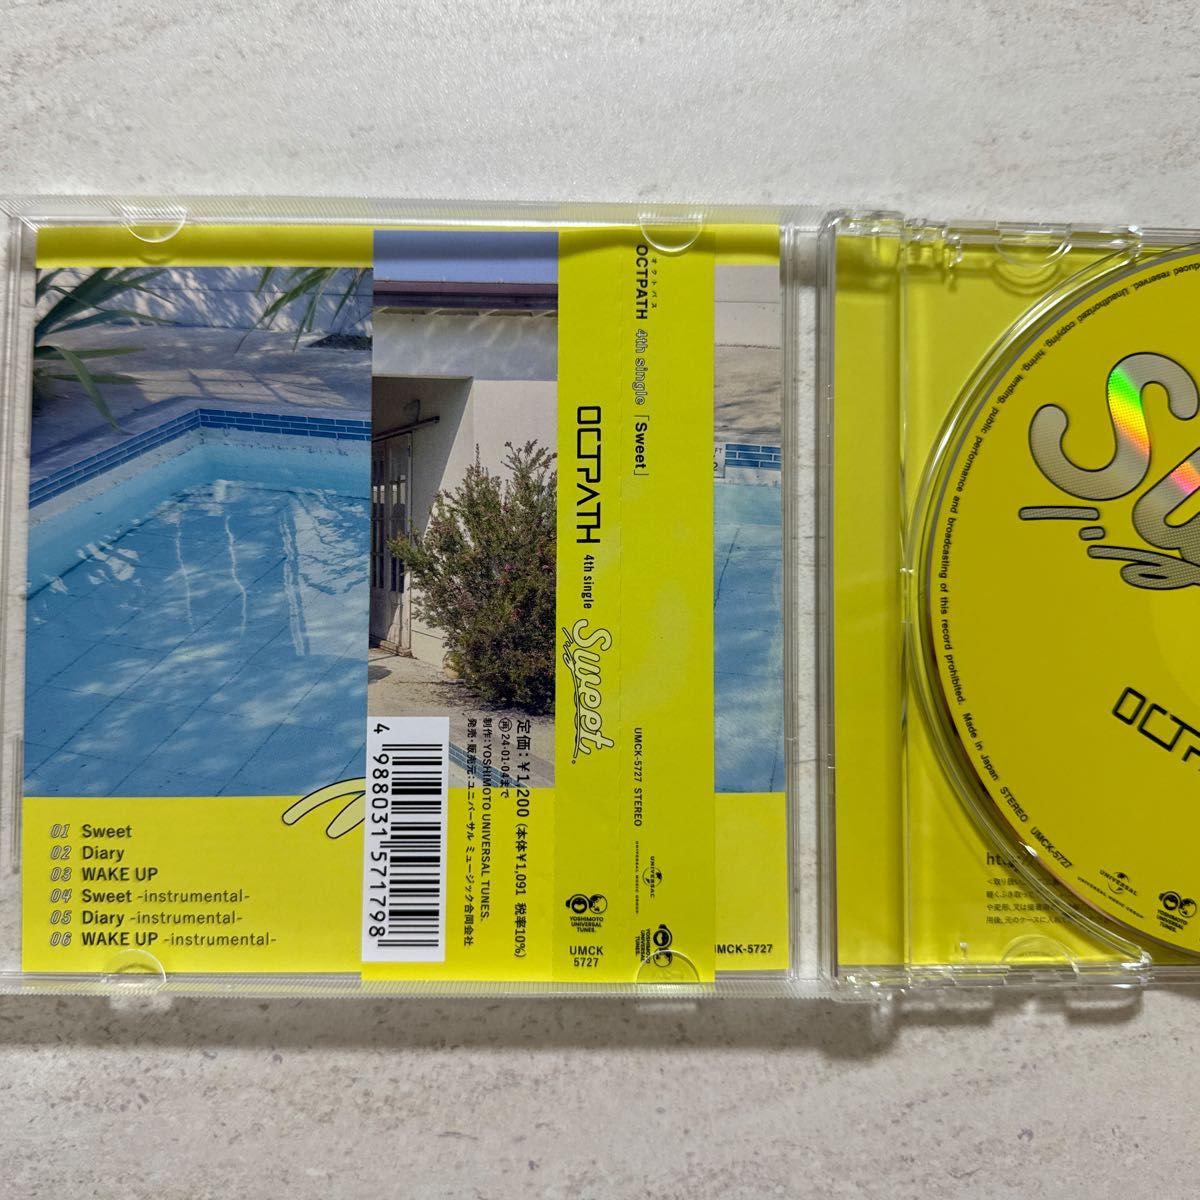 通常盤 (初回仕様/取) トレカ (初回) OCTPATH CD/Sweet 23/7/5発売 【オリコン加盟店】